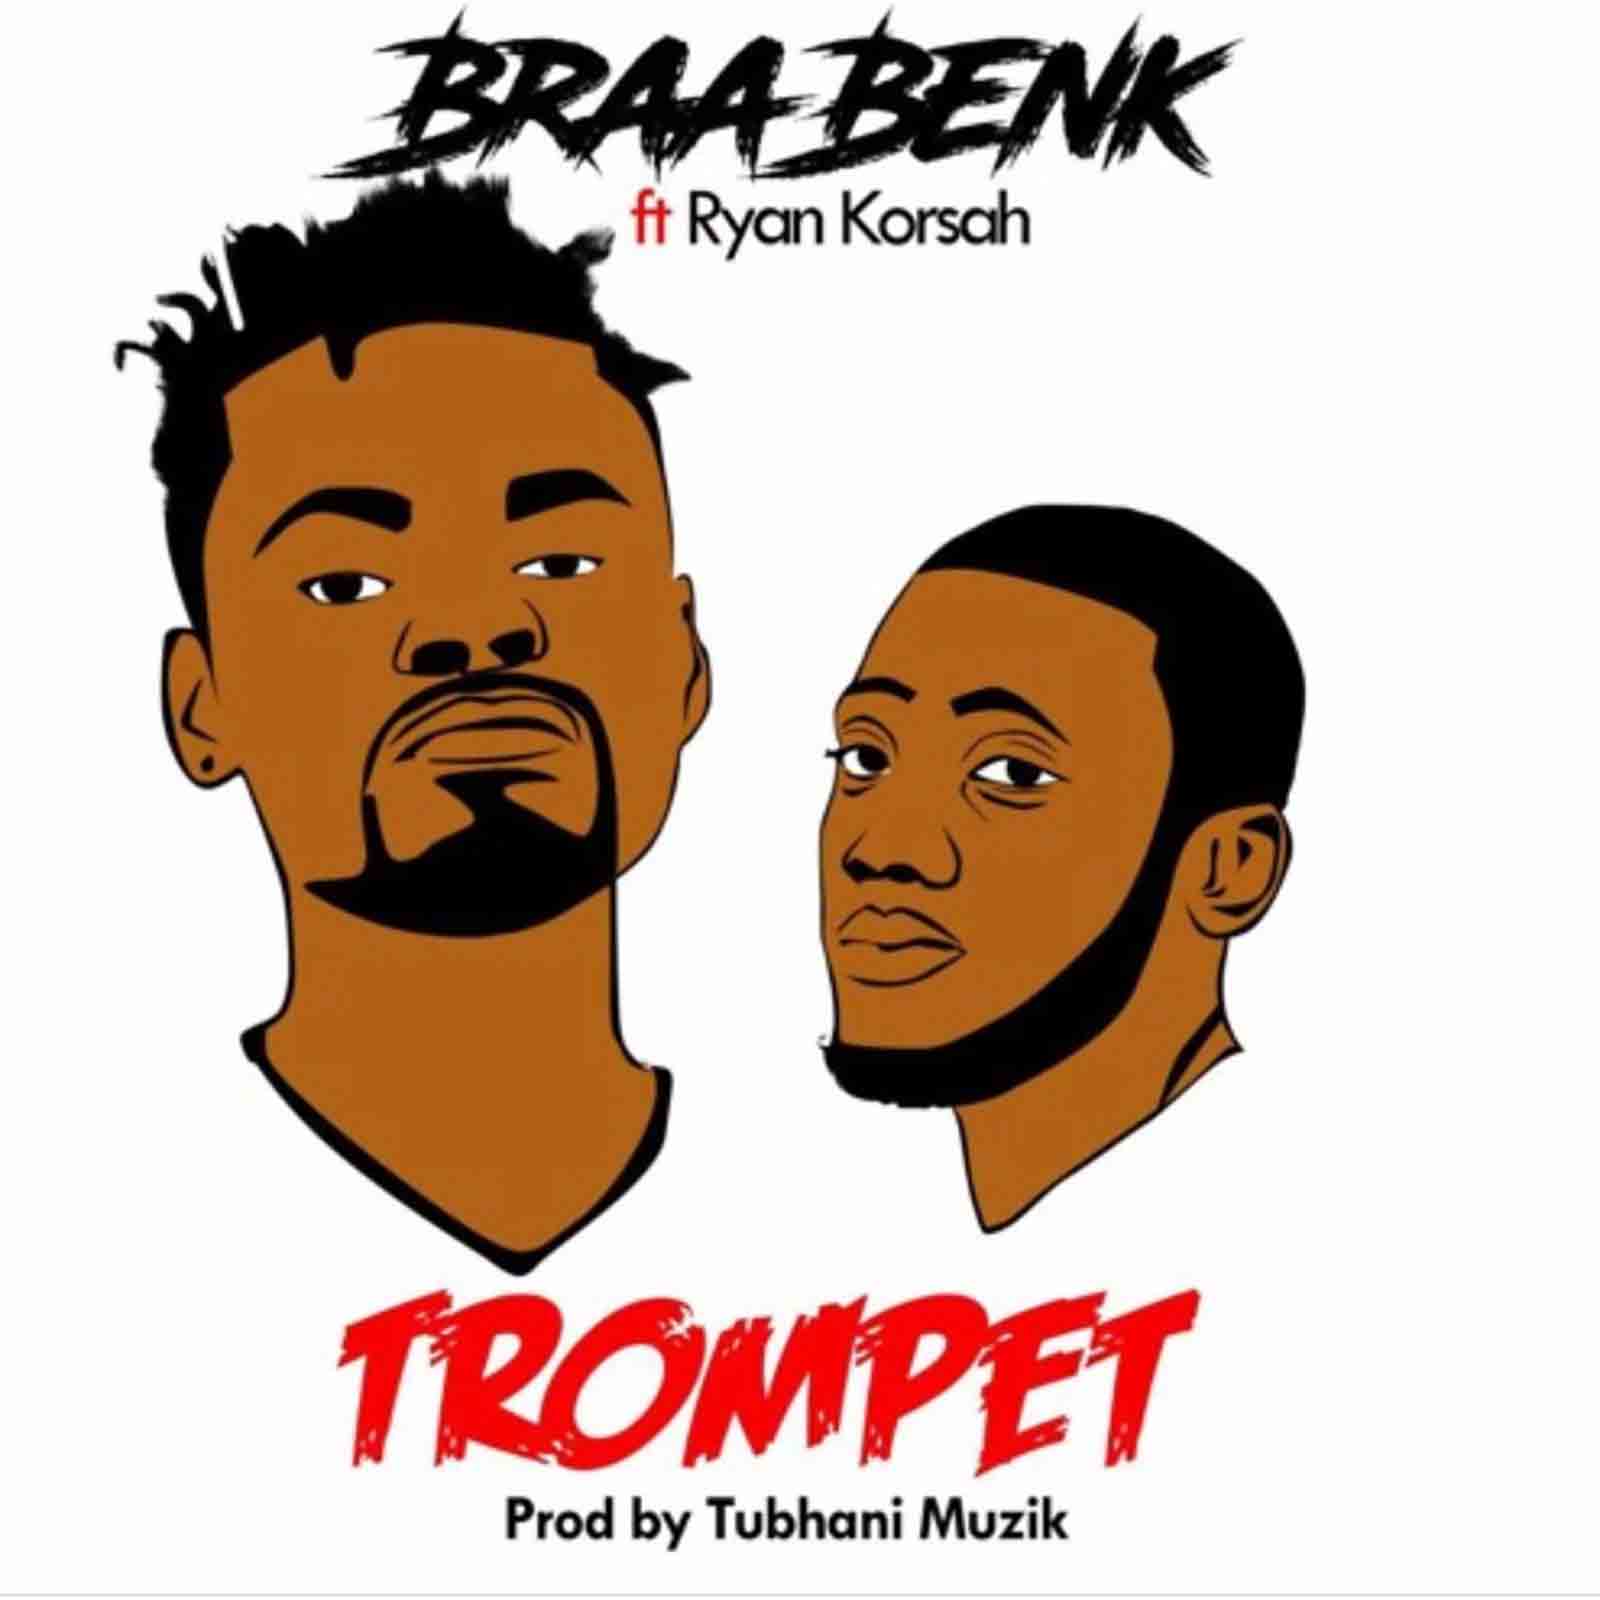 Trompet by braaBenk feat. Ryan Korsah